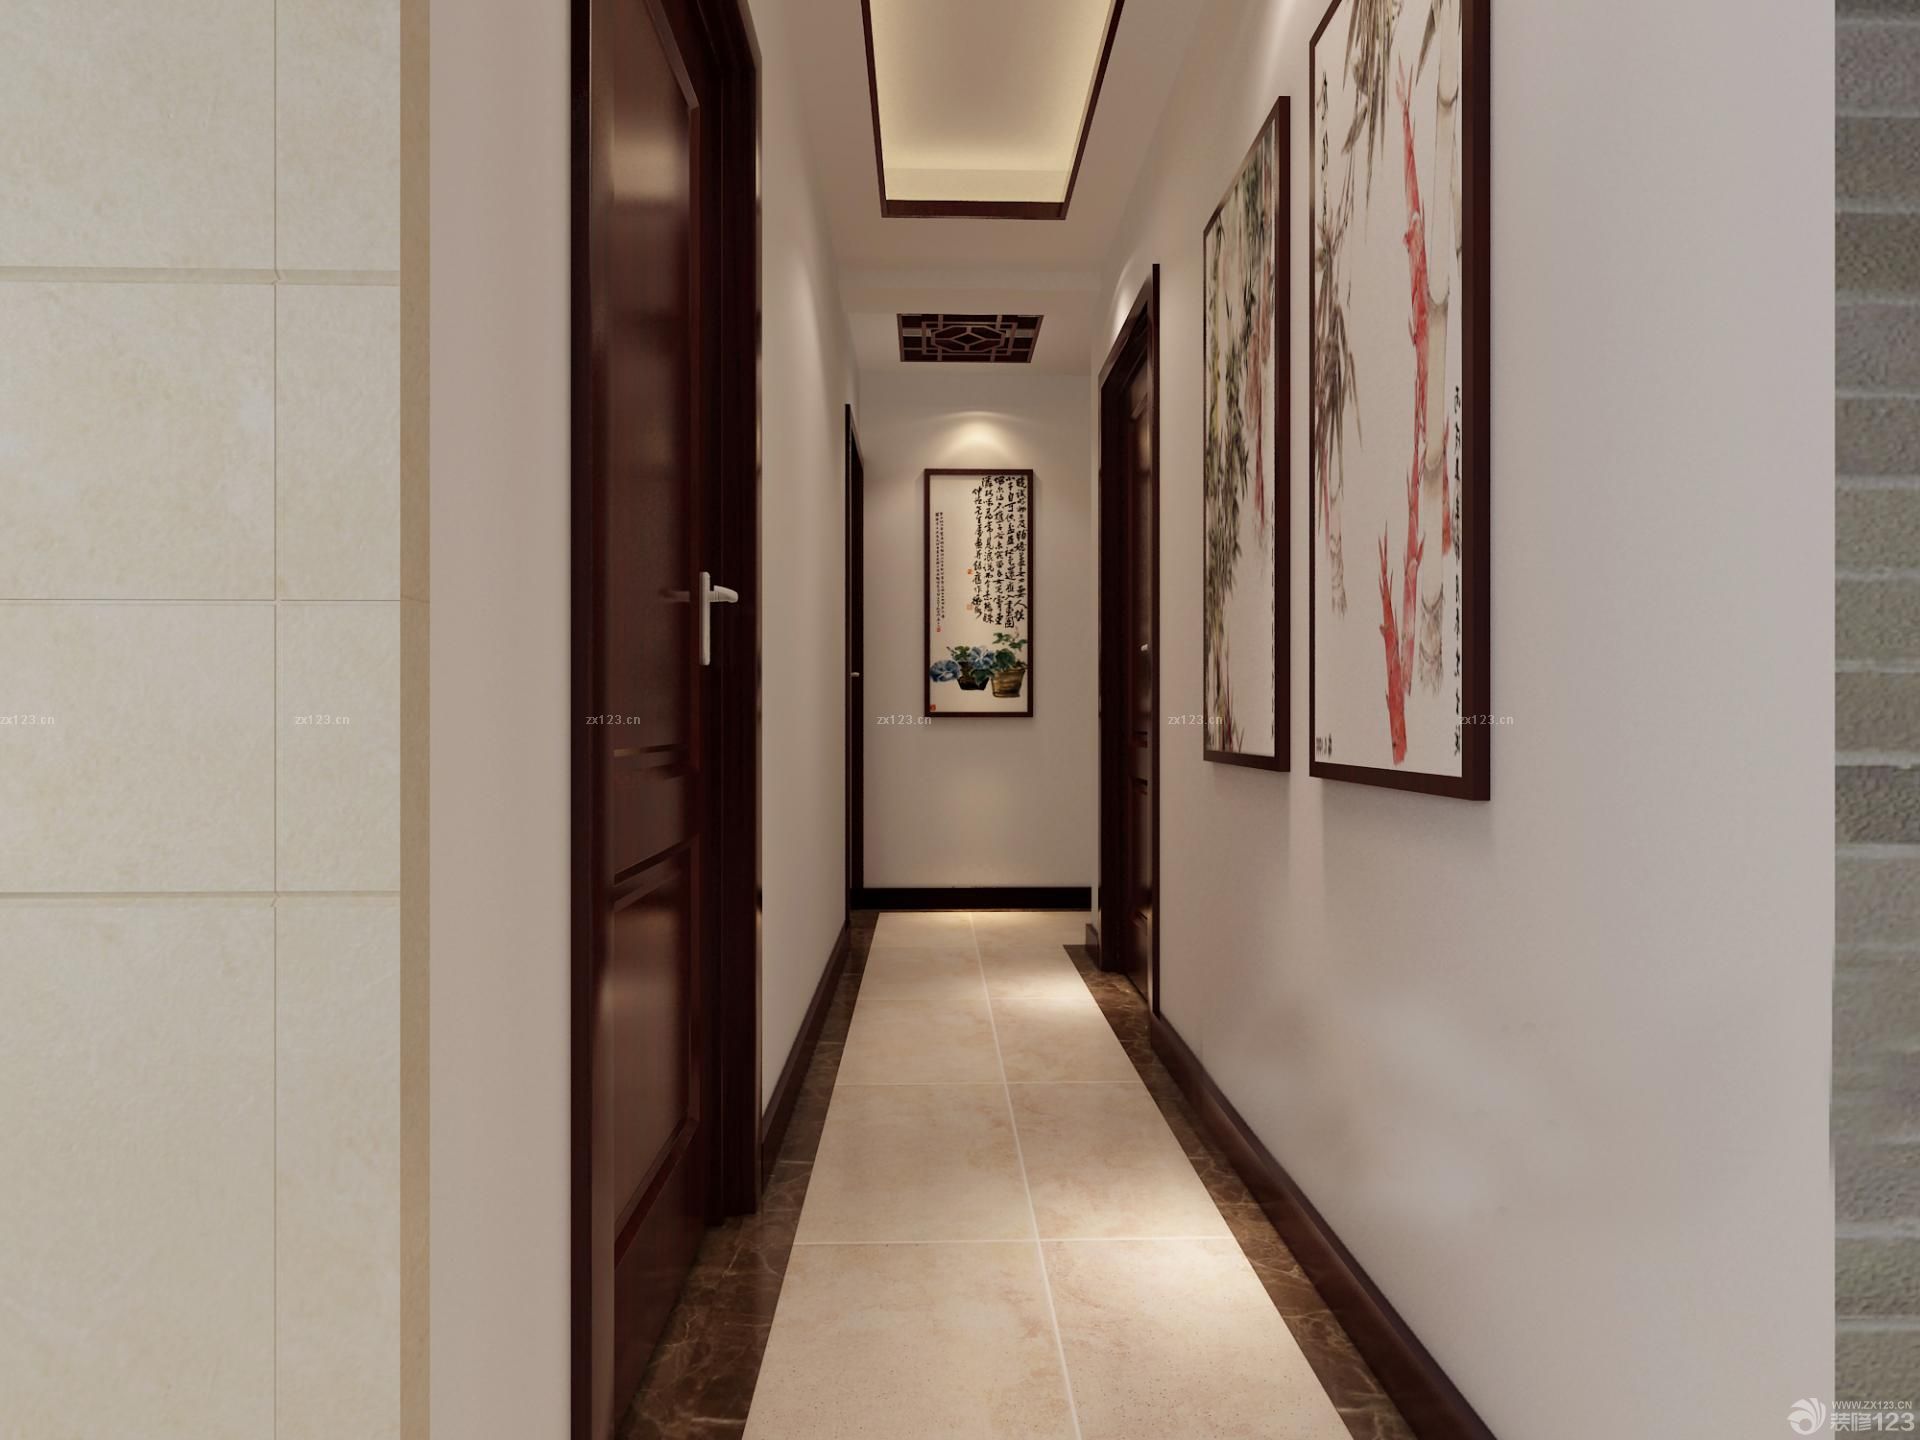 140平米中式房屋走廊玄关装修效果图欣赏